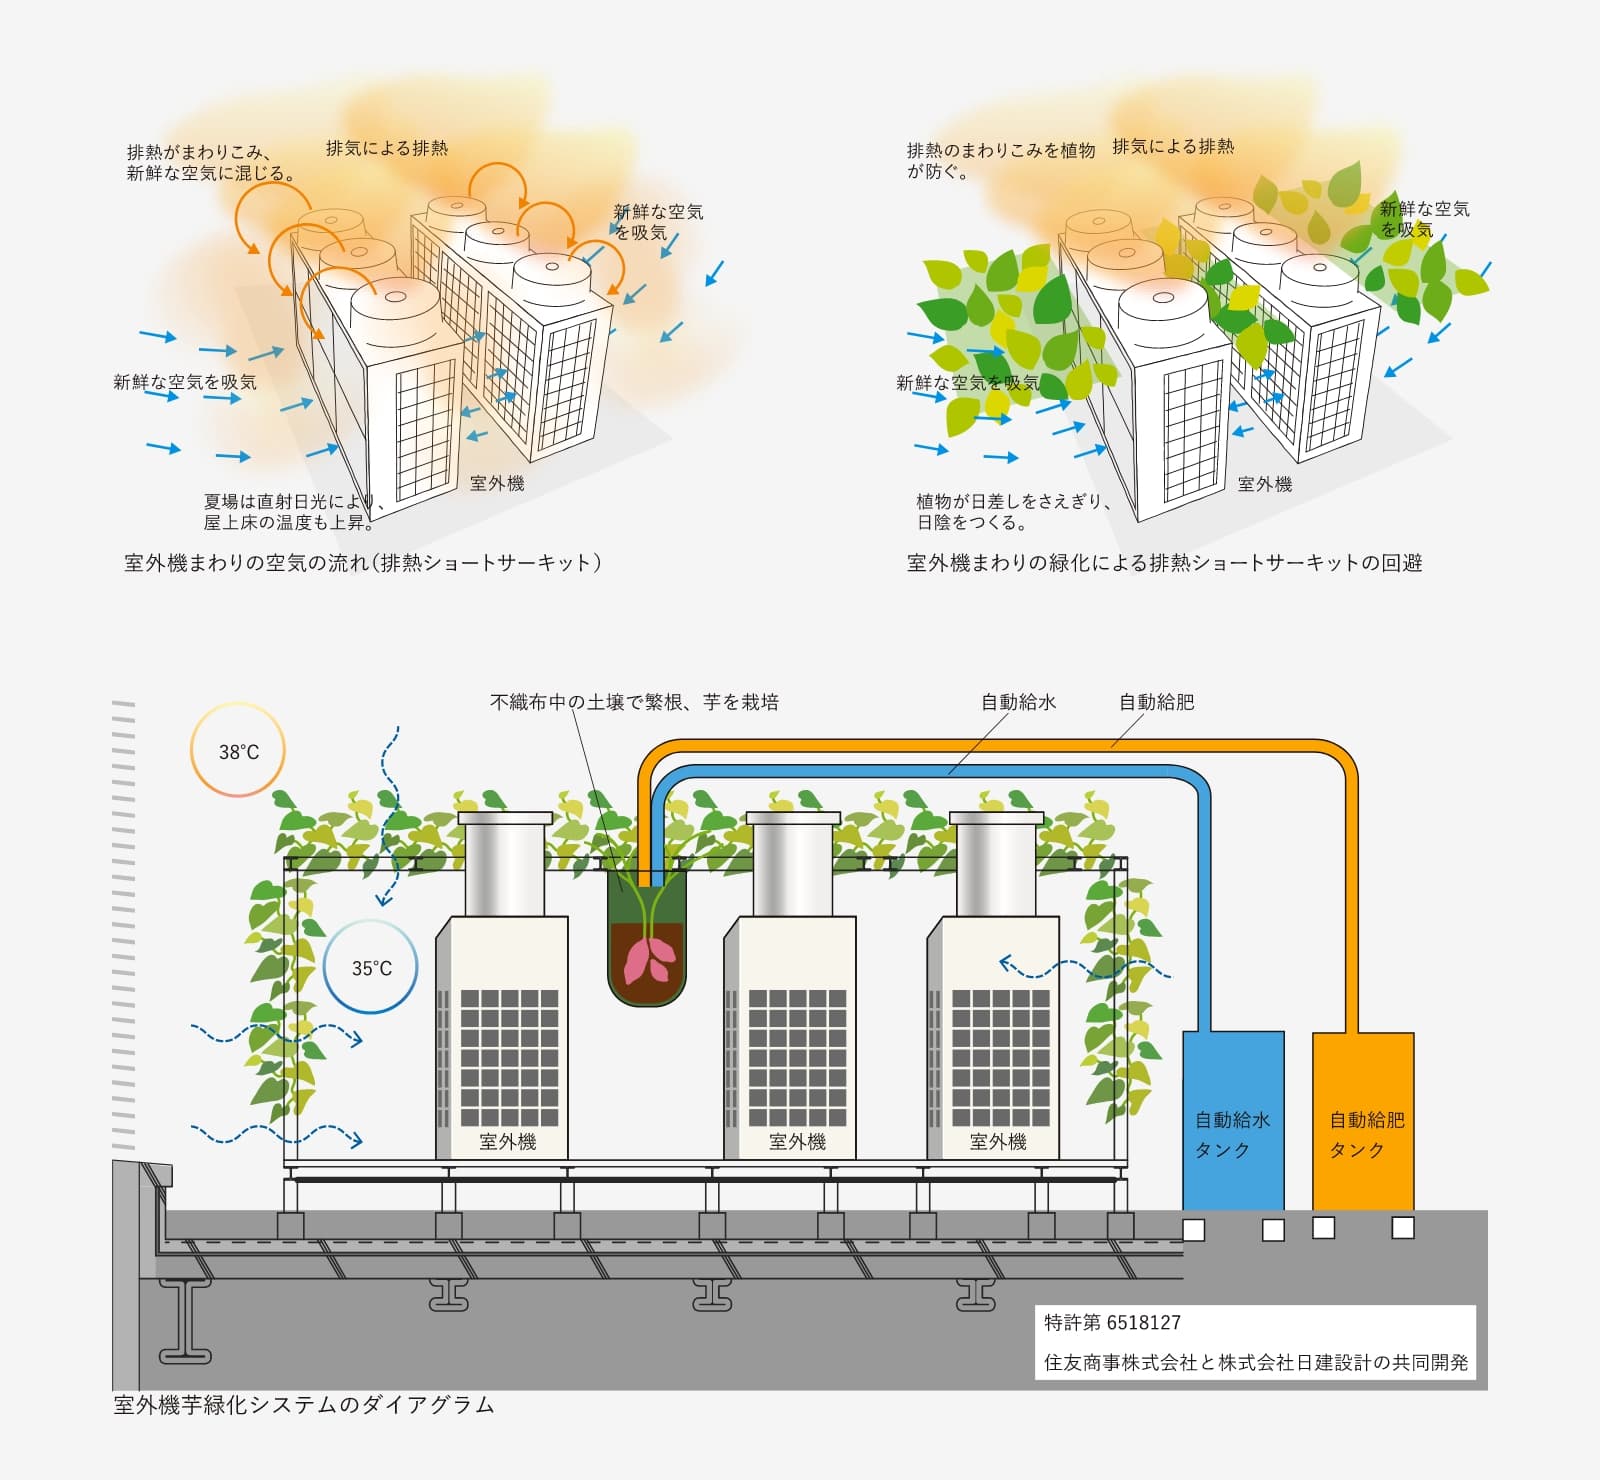 室外機芋緑化システムの概略図（イラストレーション・図版作成：カレラ）